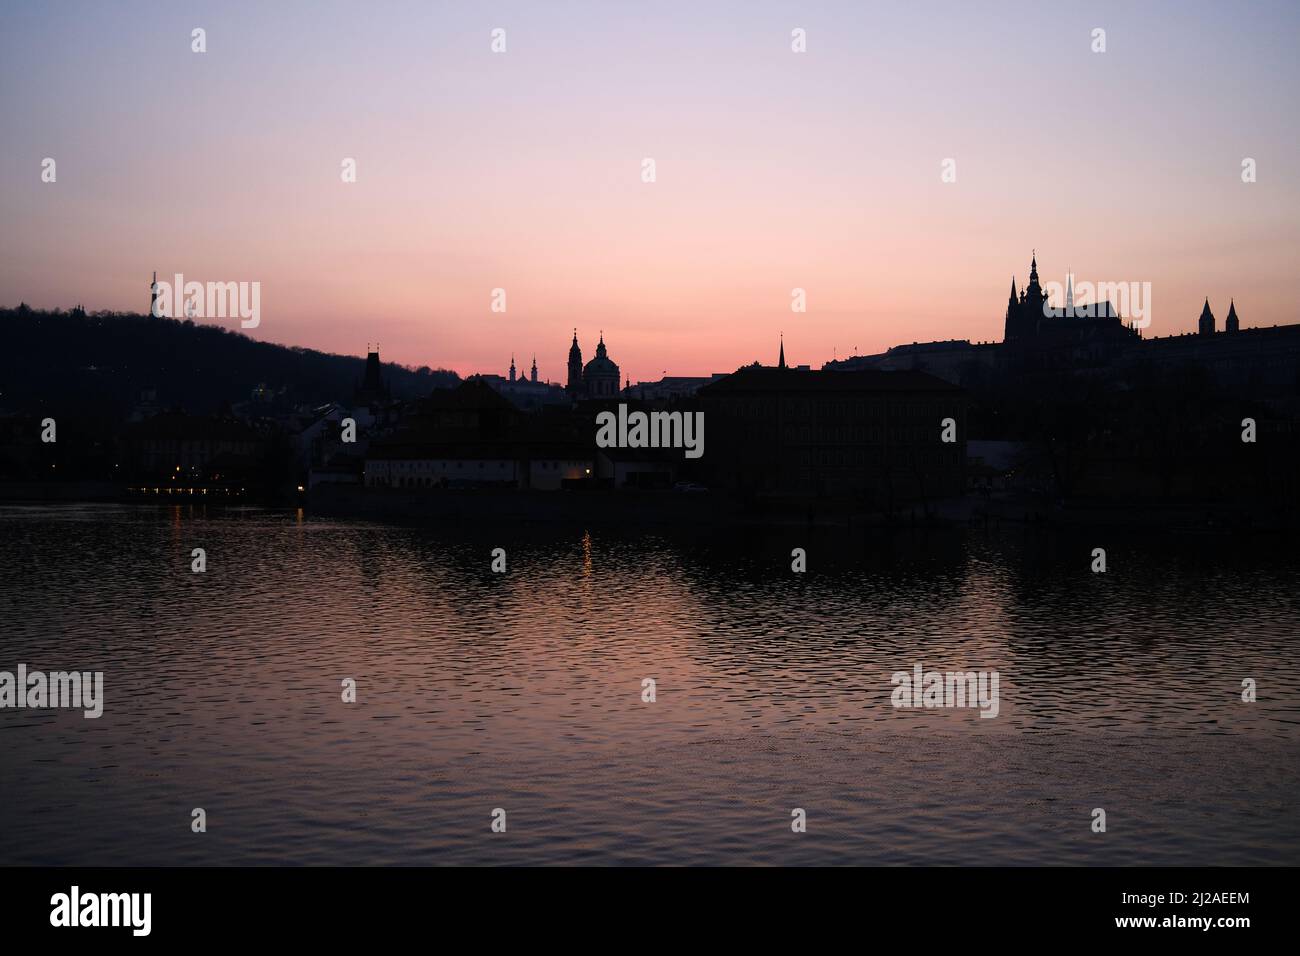 Dusk settles across the Vltava River in central Prague, Czech Republic. Stock Photo